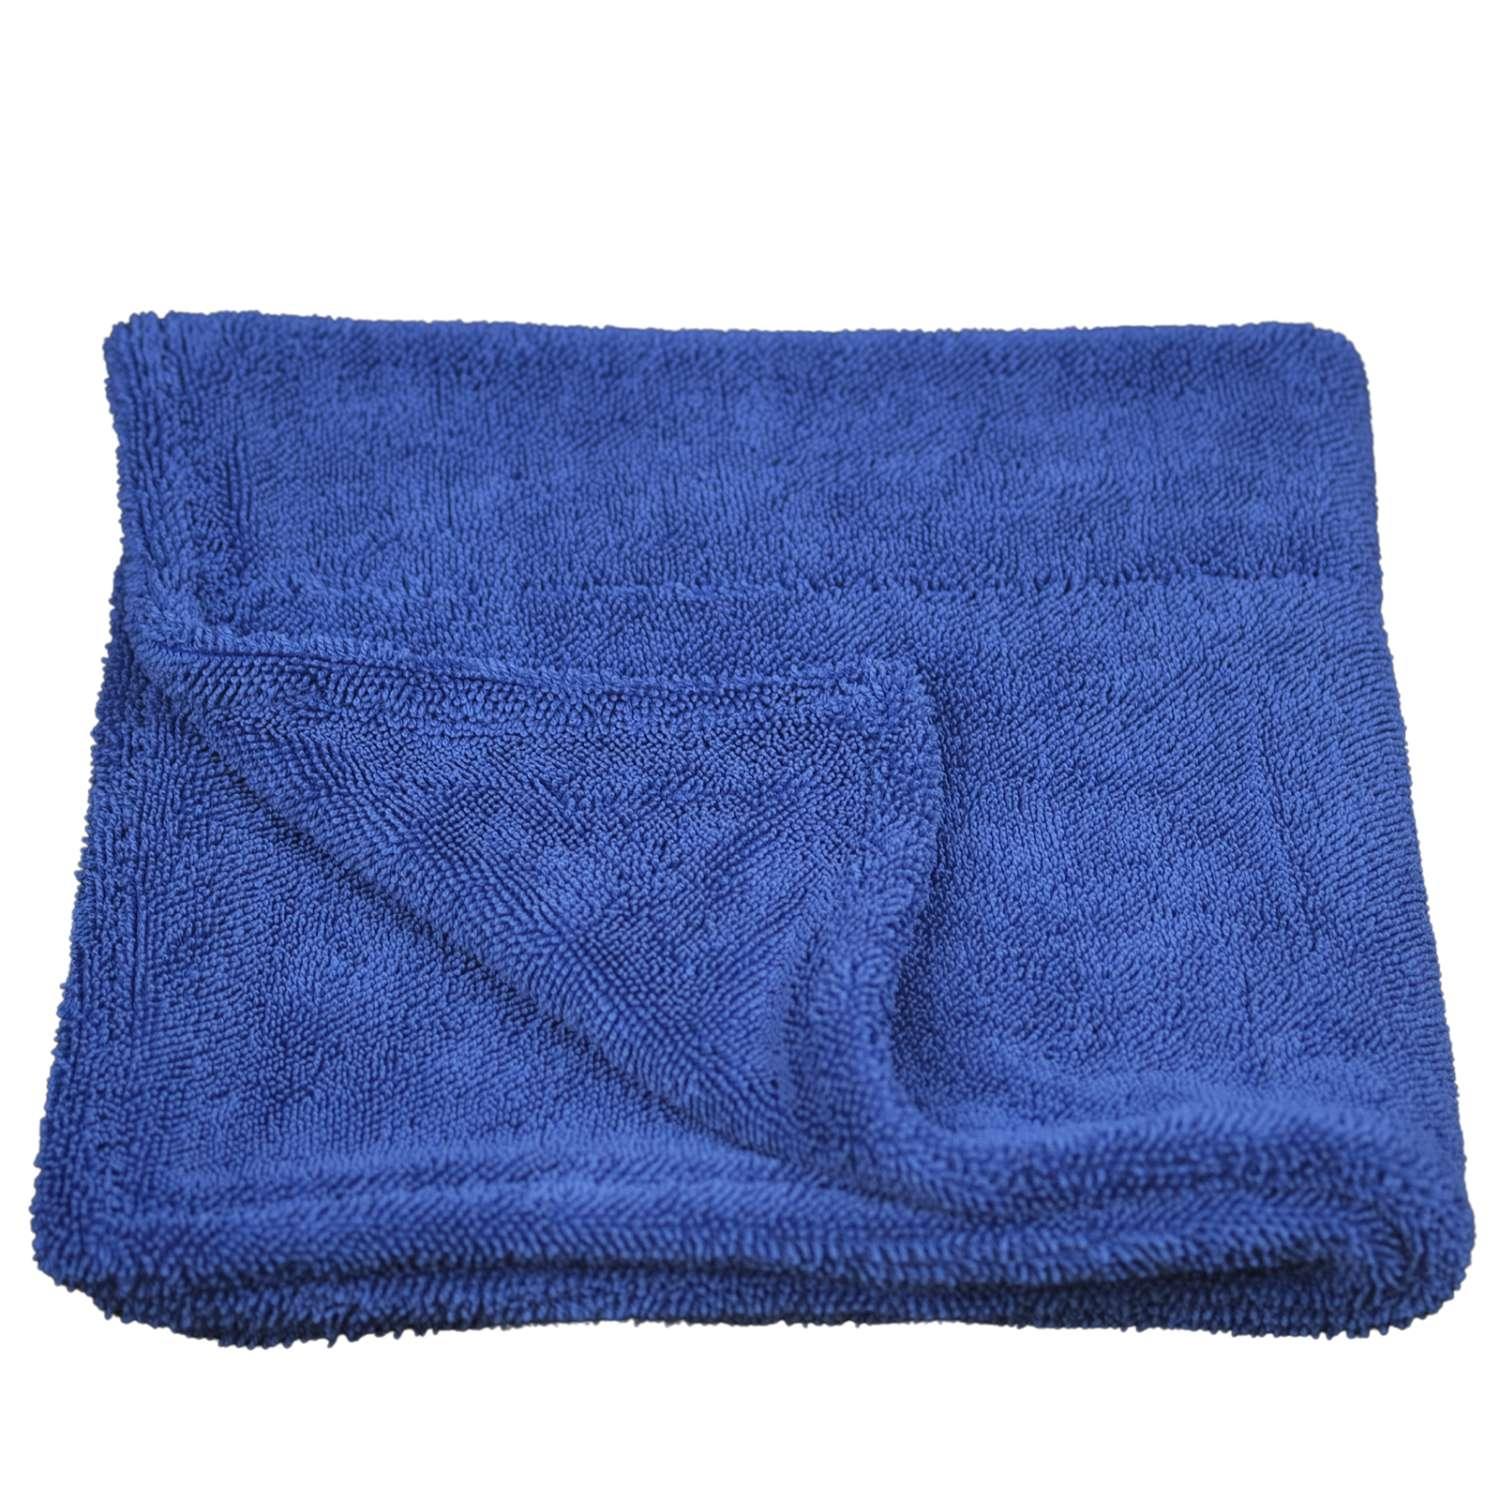 One-sided Twist Loop Towel – Microfibre Cloths